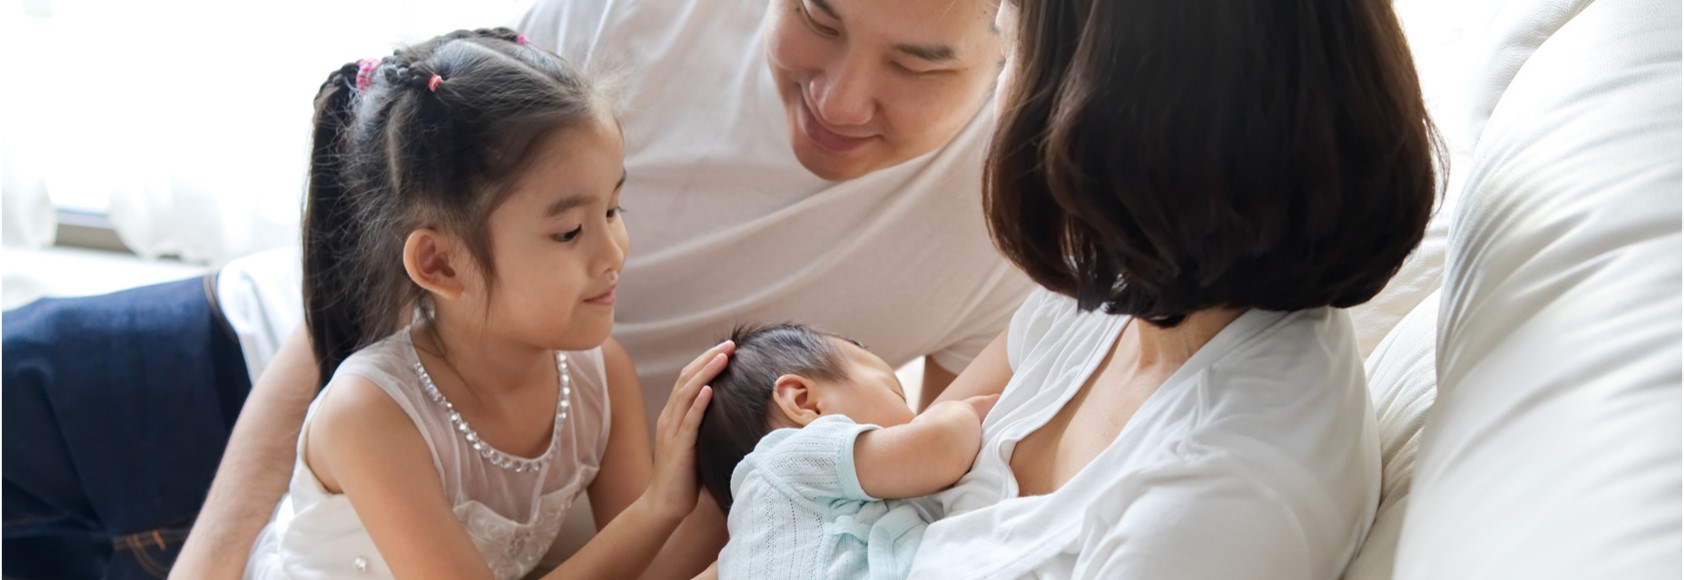 Family and Breastfeeding Baby